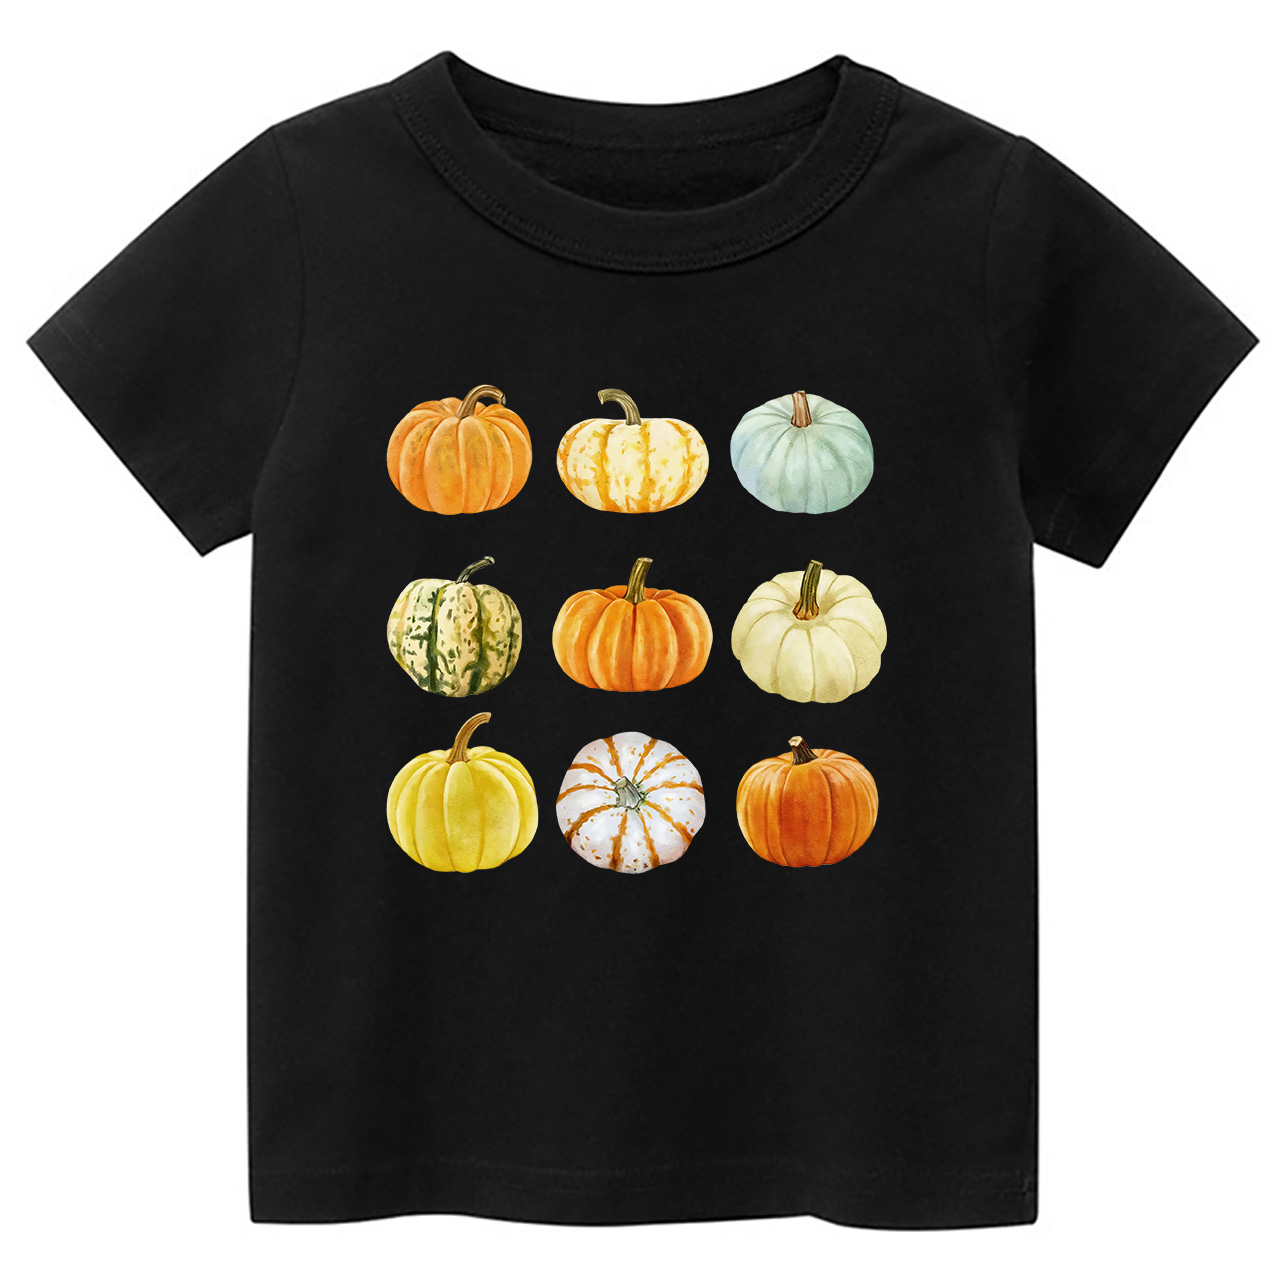 Pumpkin Shirt For Halloween